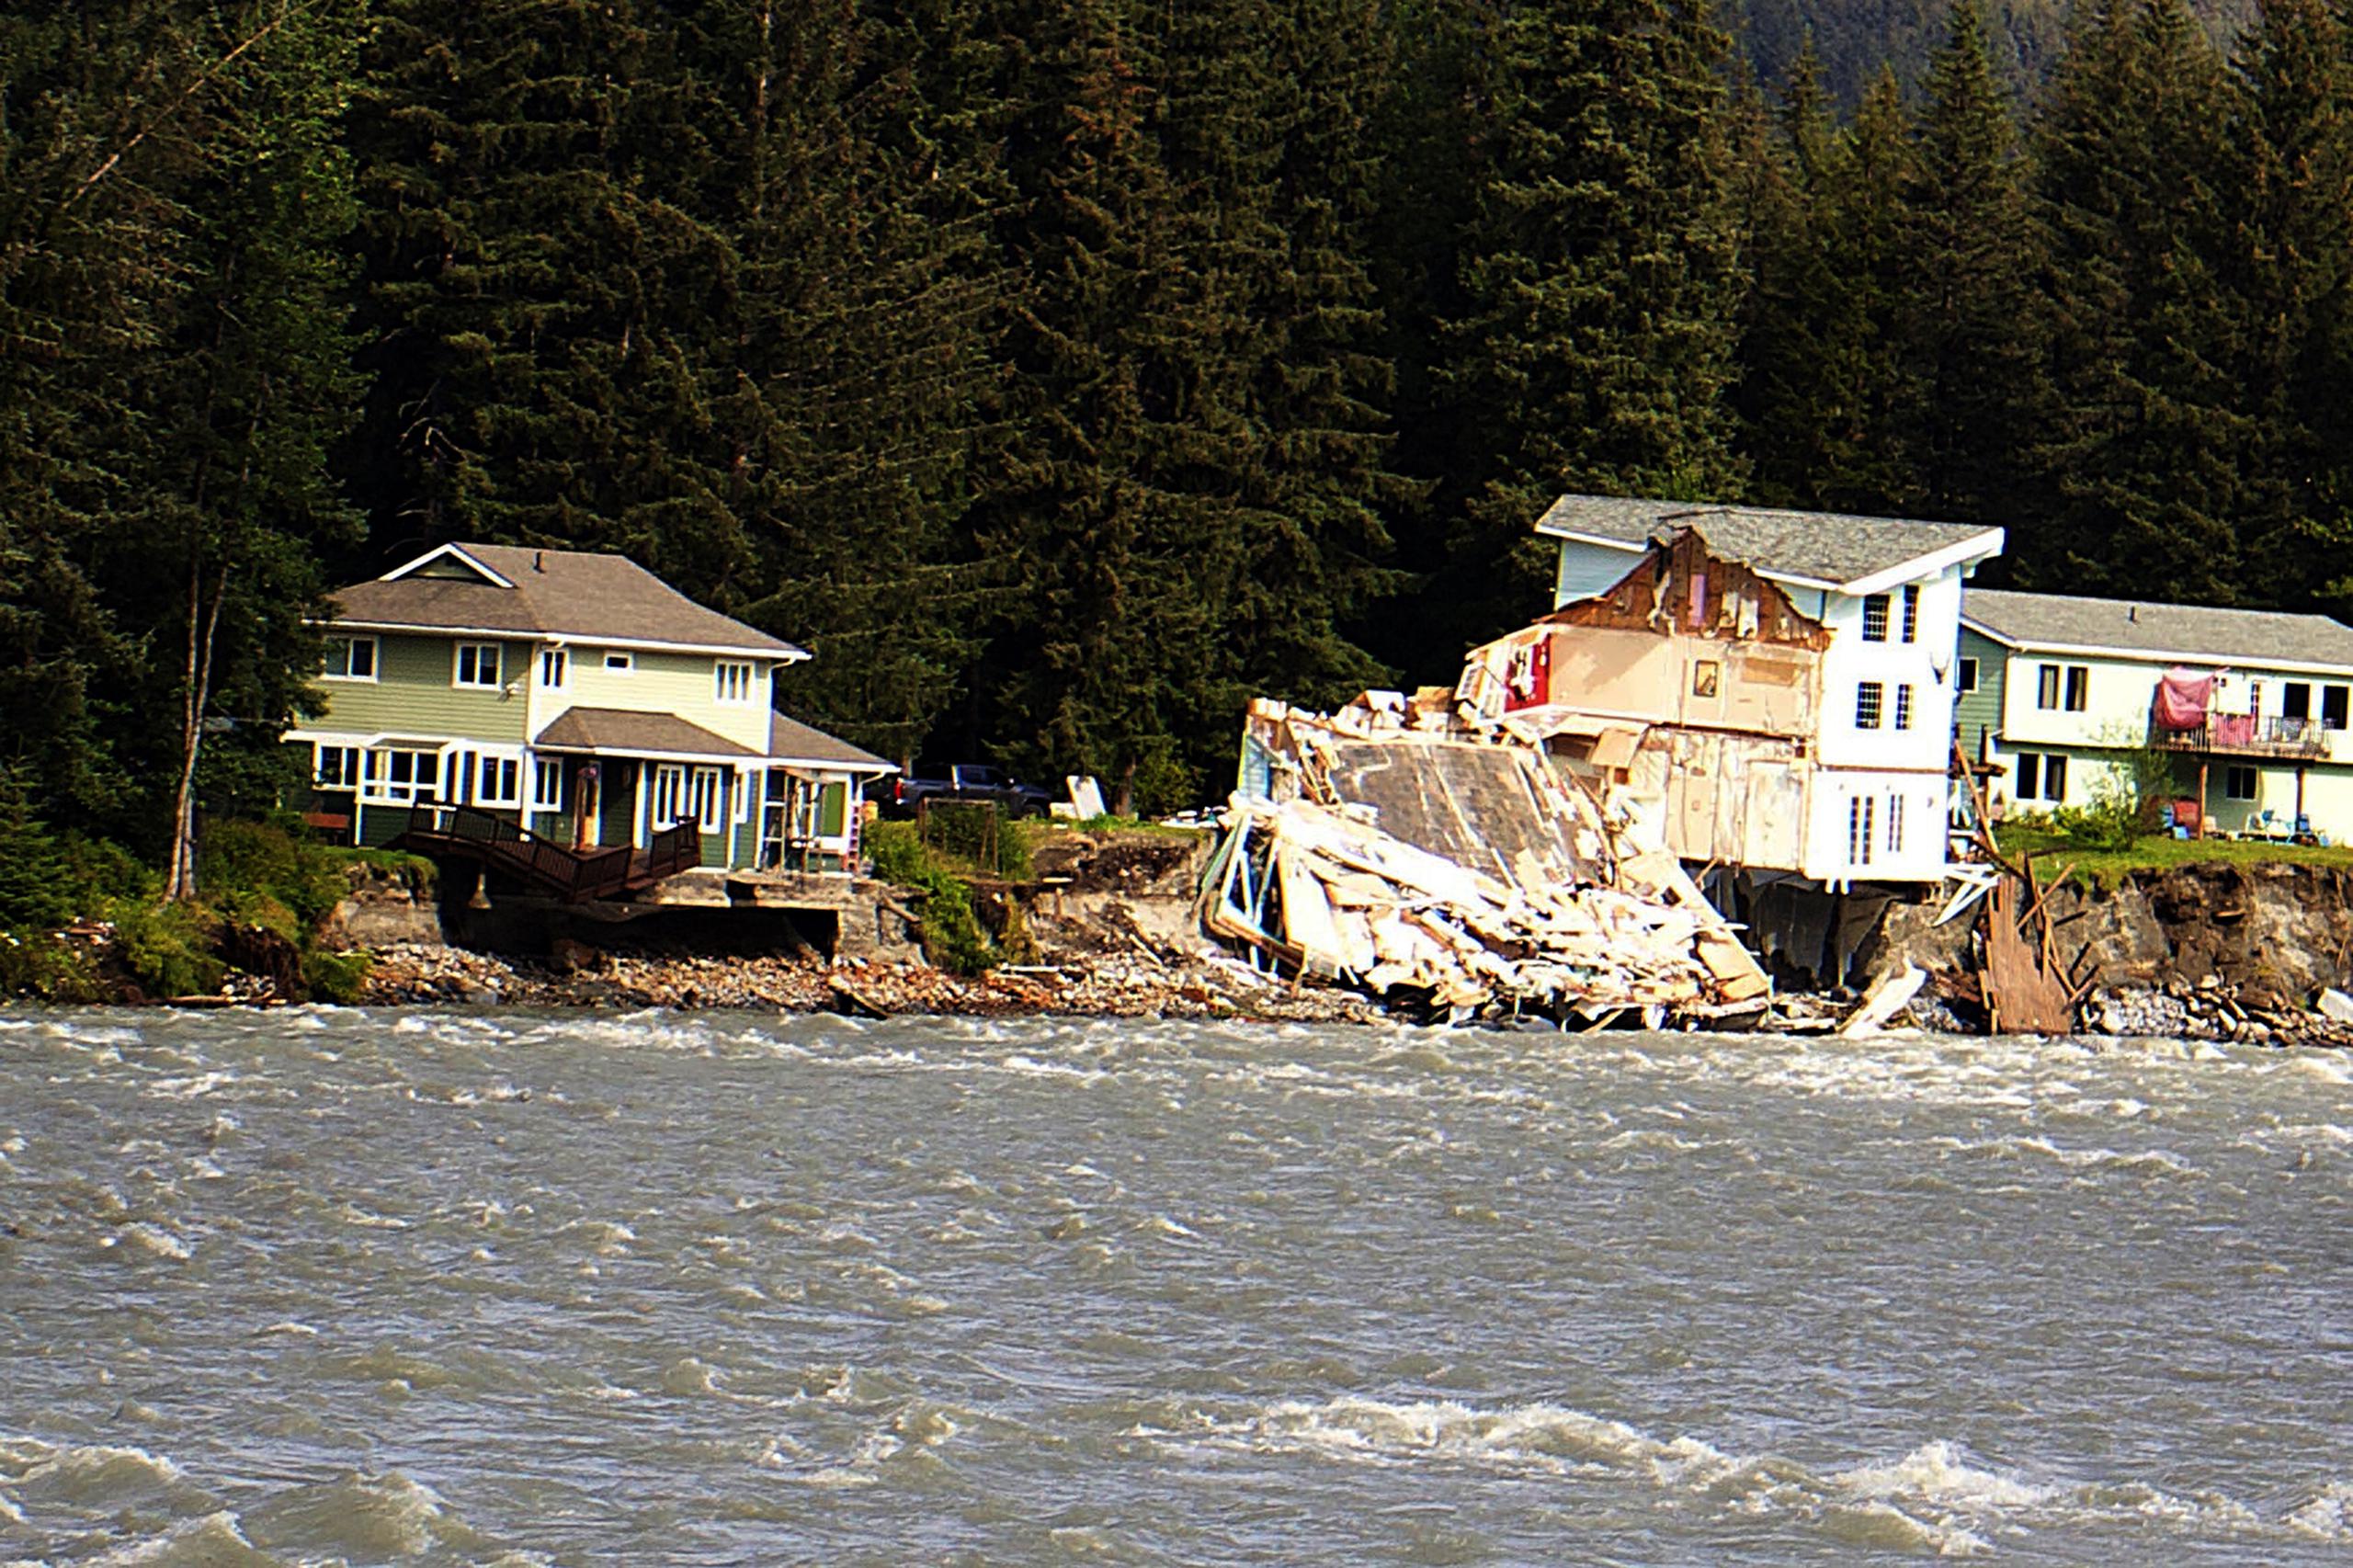 En Alaska, los medios mostraron imágenes de una vivienda que fue arrasada en cuestión de segundos por la crecida del río Mendenhall tras la ruptura del glaciar del mismo nombre.